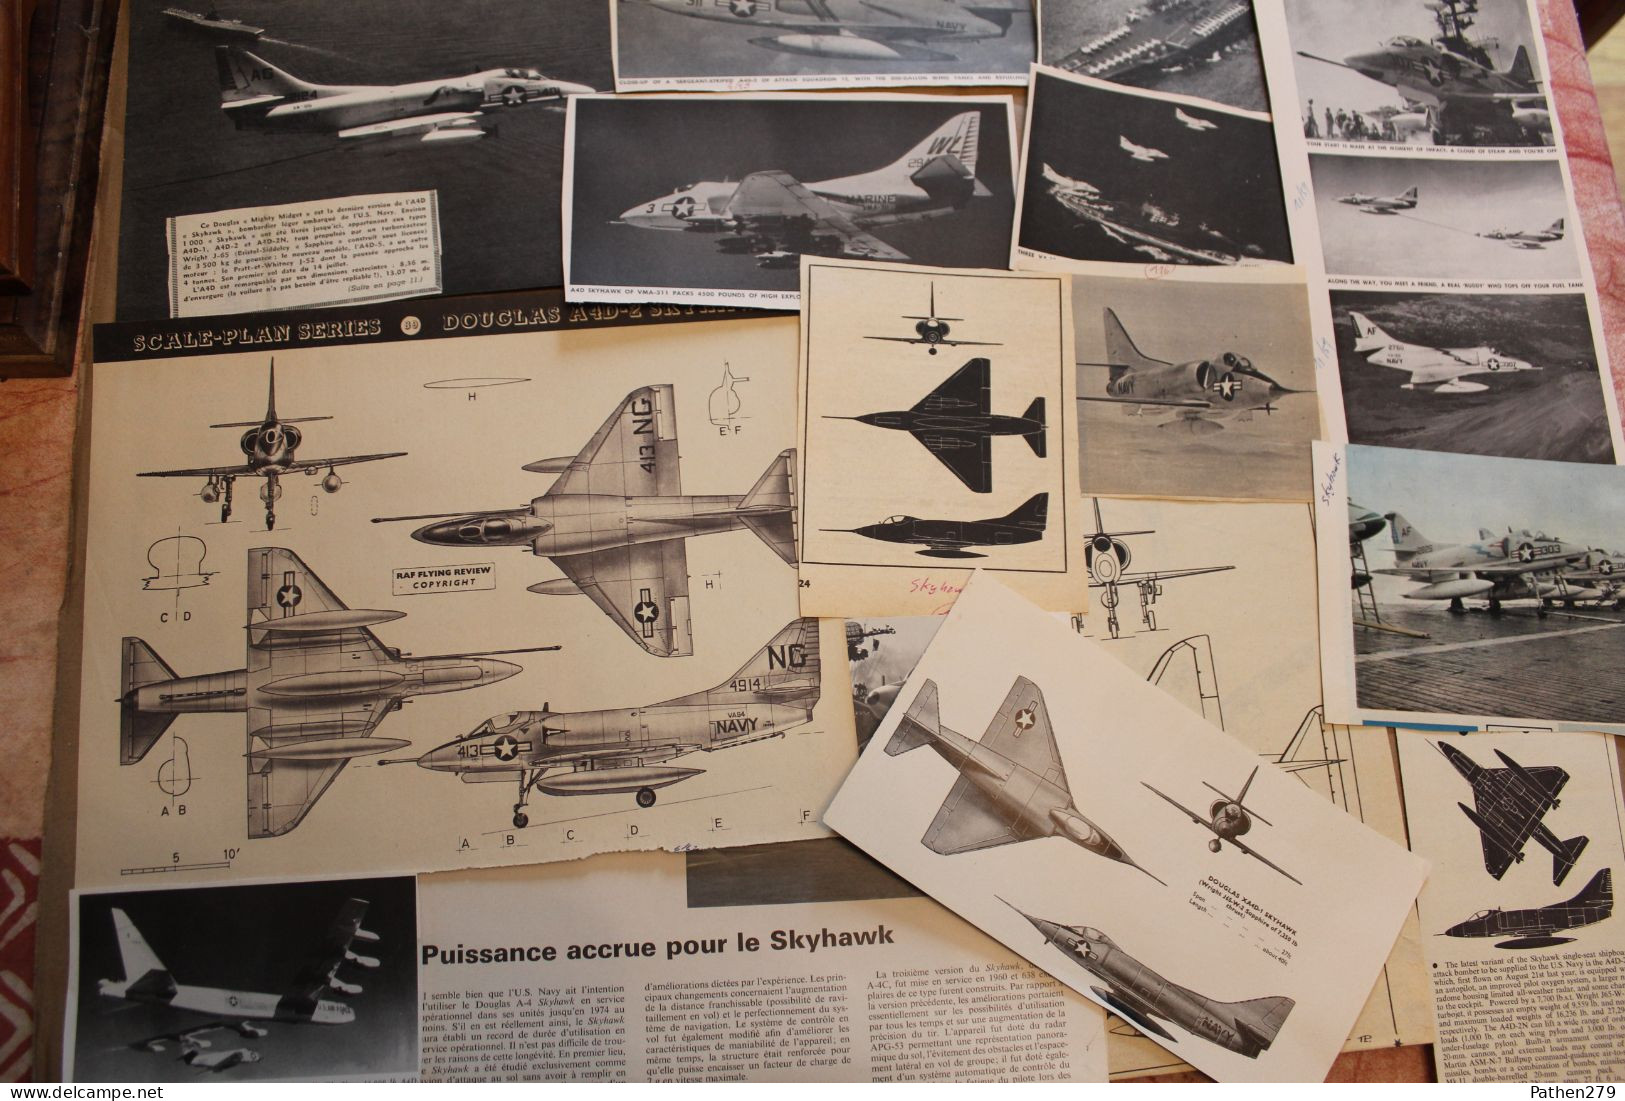 Lot de 339g d'anciennes coupures de presse et photo de l'aéronef américain Douglas A-4 "Skyhawk"